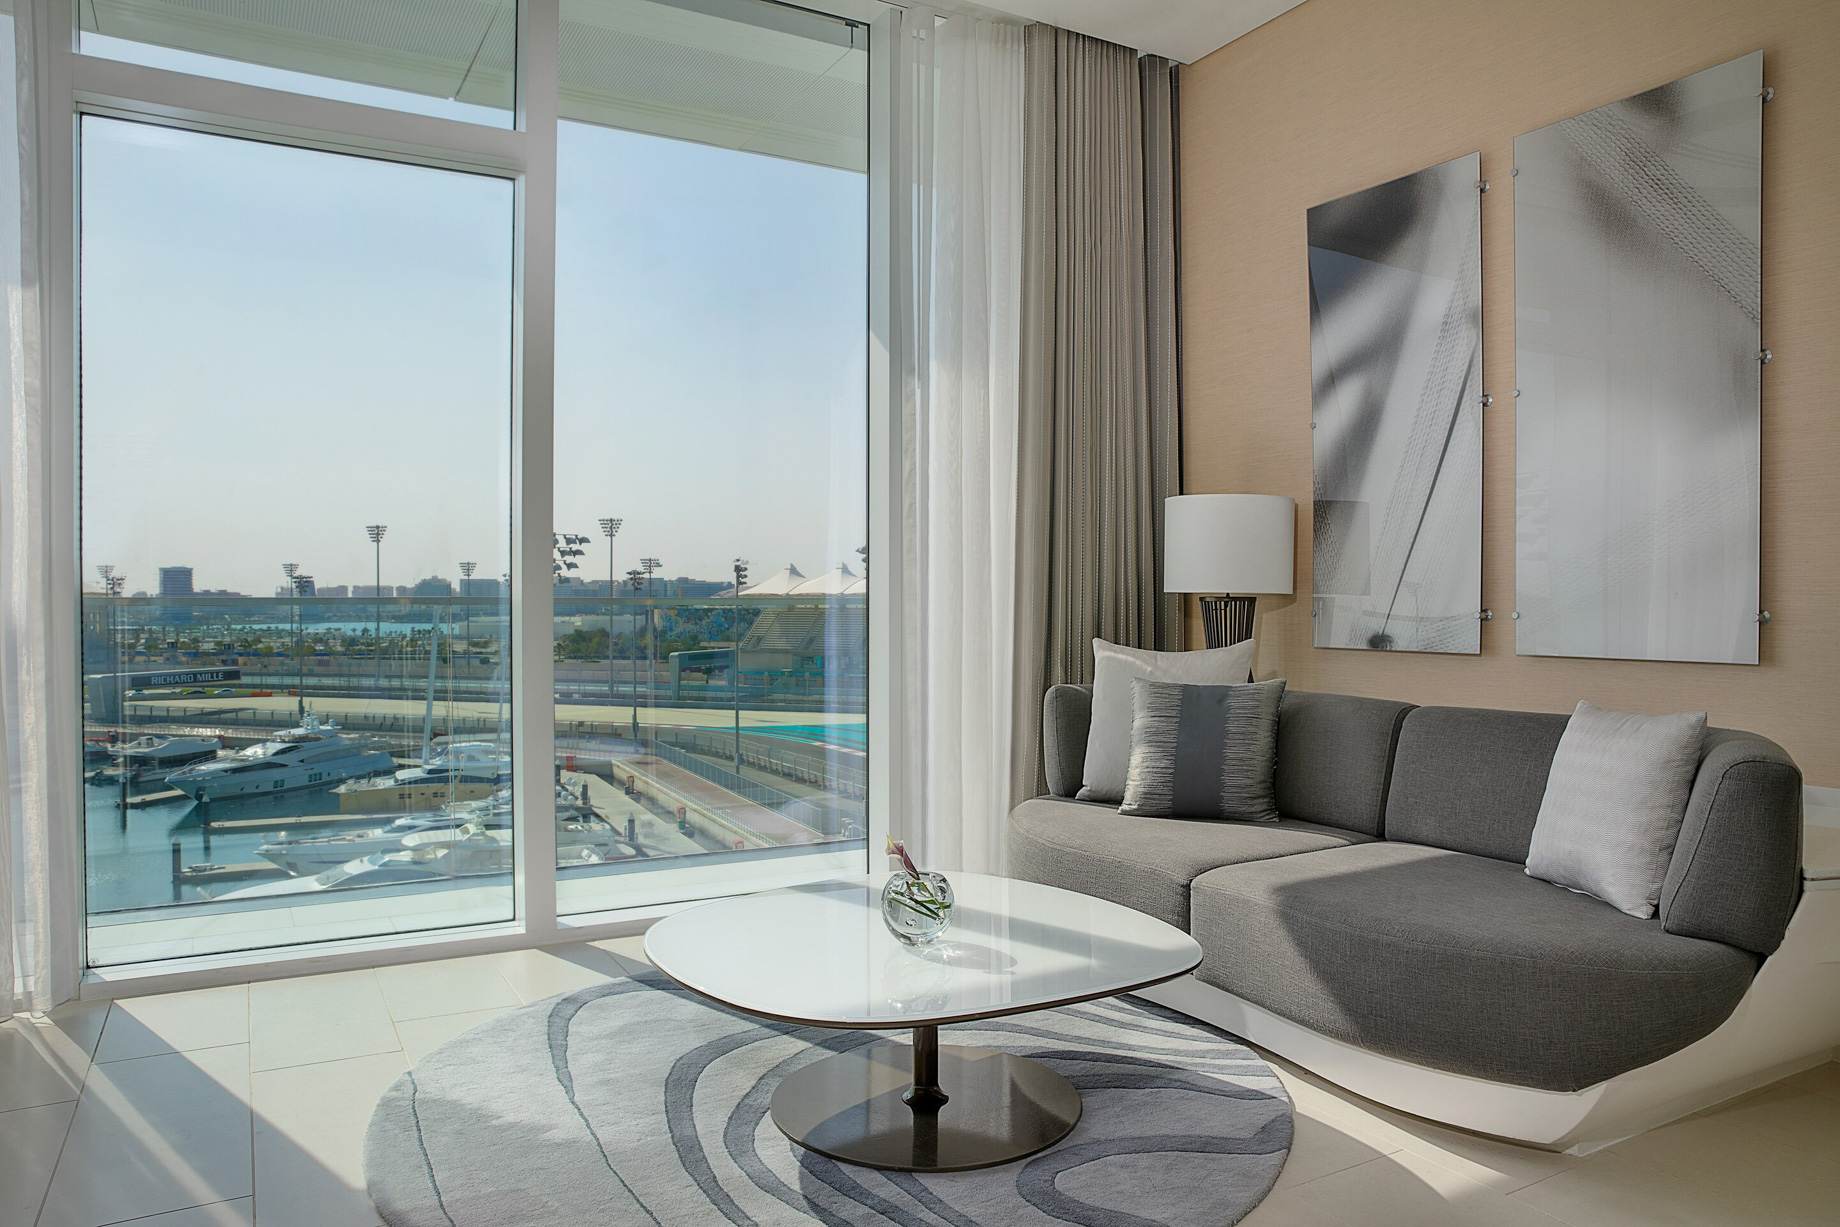 W Abu Dhabi Yas Island Hotel – Abu Dhabi, UAE – Spectacular Guest Room View